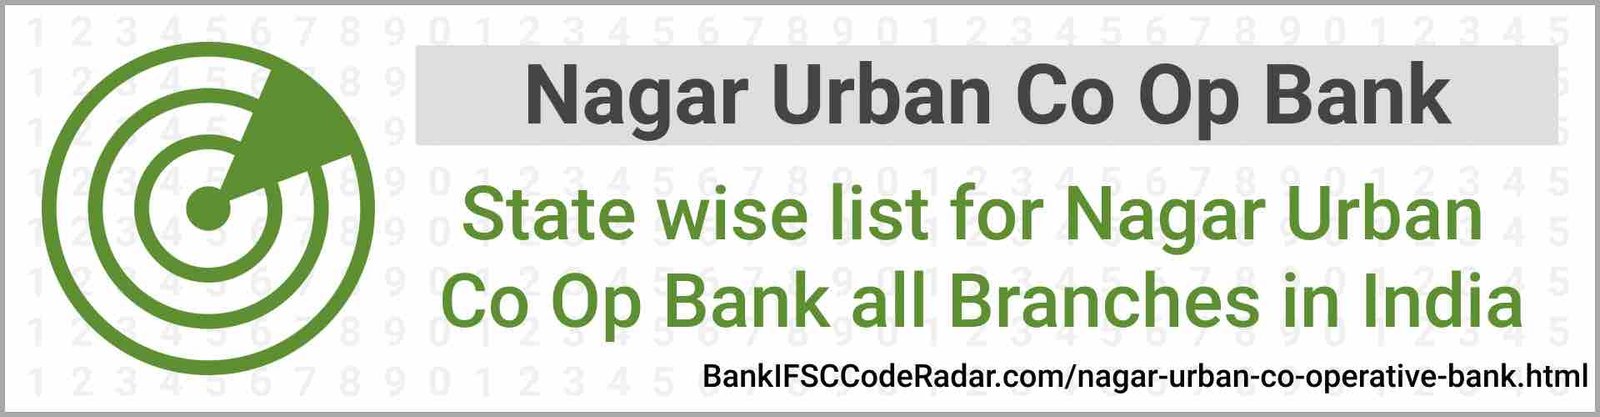 Nagar Urban Co Operative Bank All Branches India